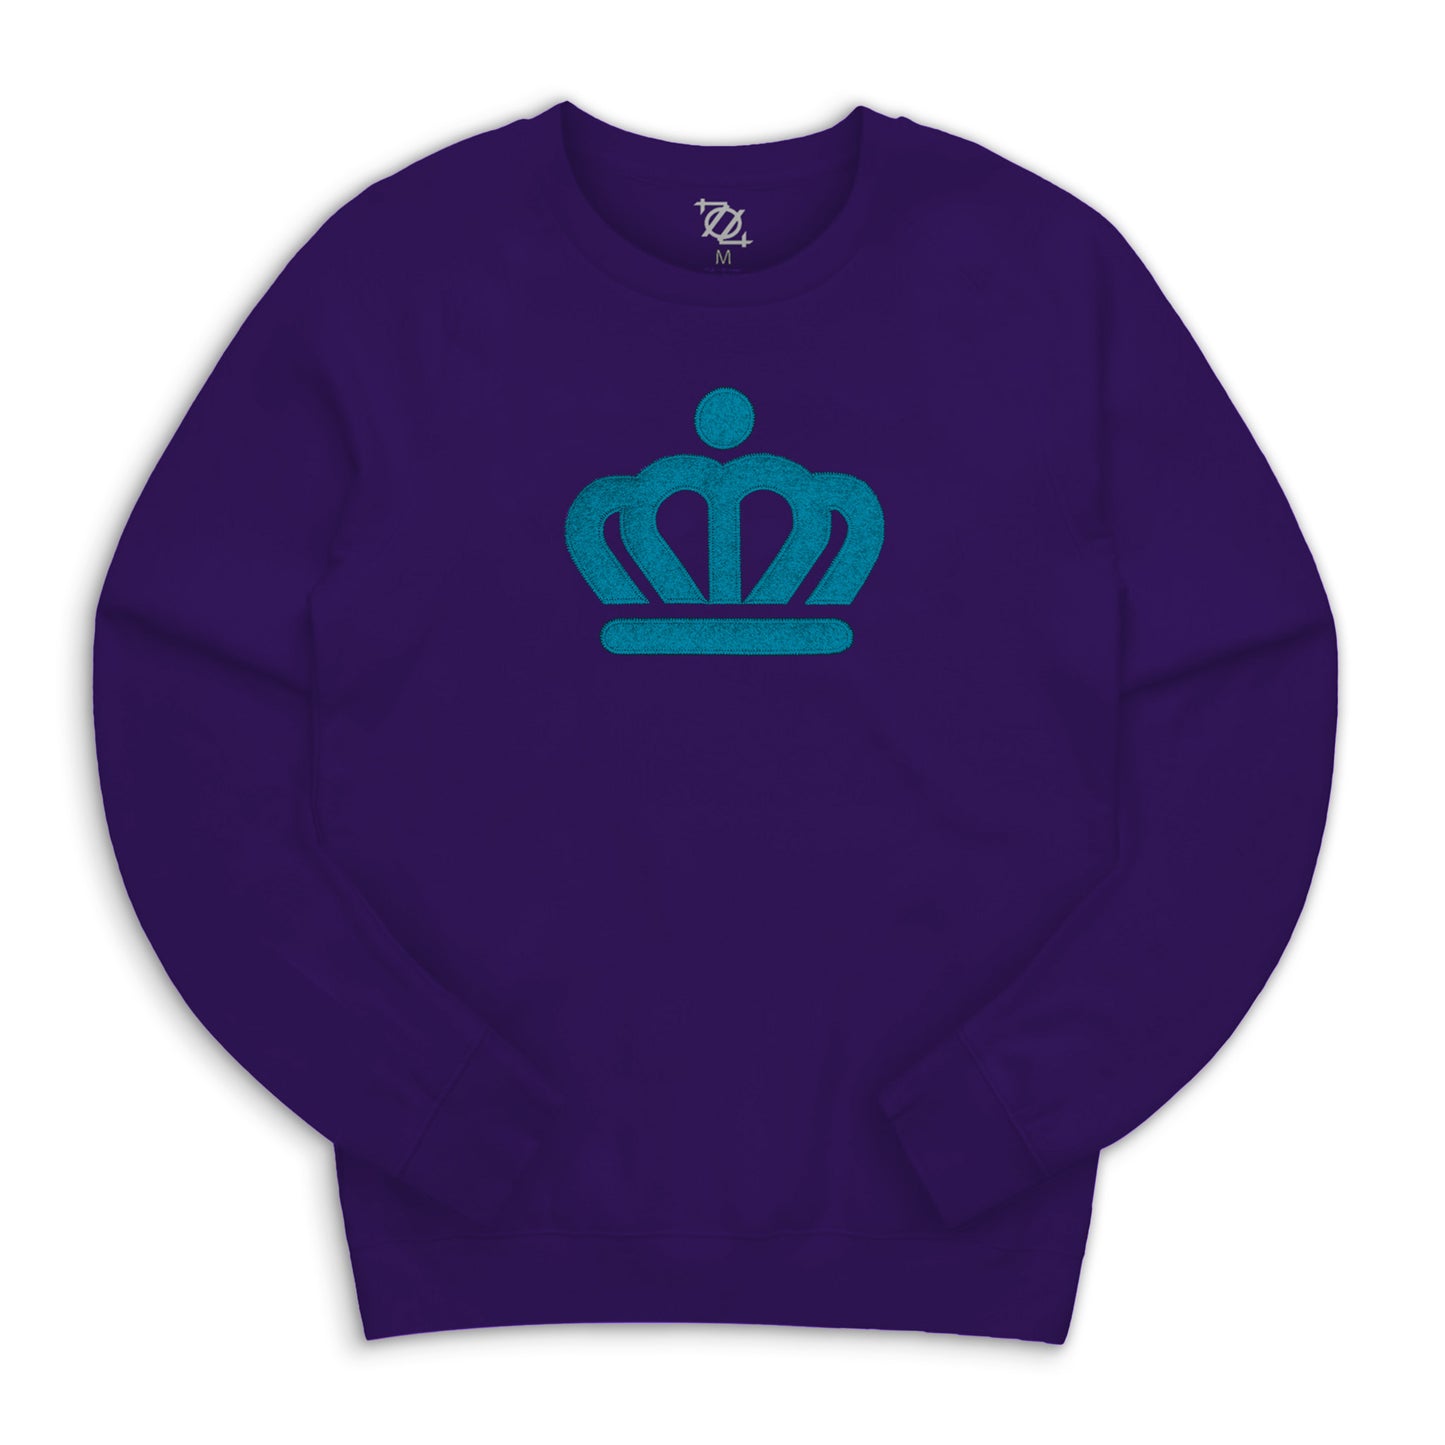 704 Shop x City of Charlotte Official Crown Applique Crew Neck Sweatshirt - Purple/Teal (Unisex)